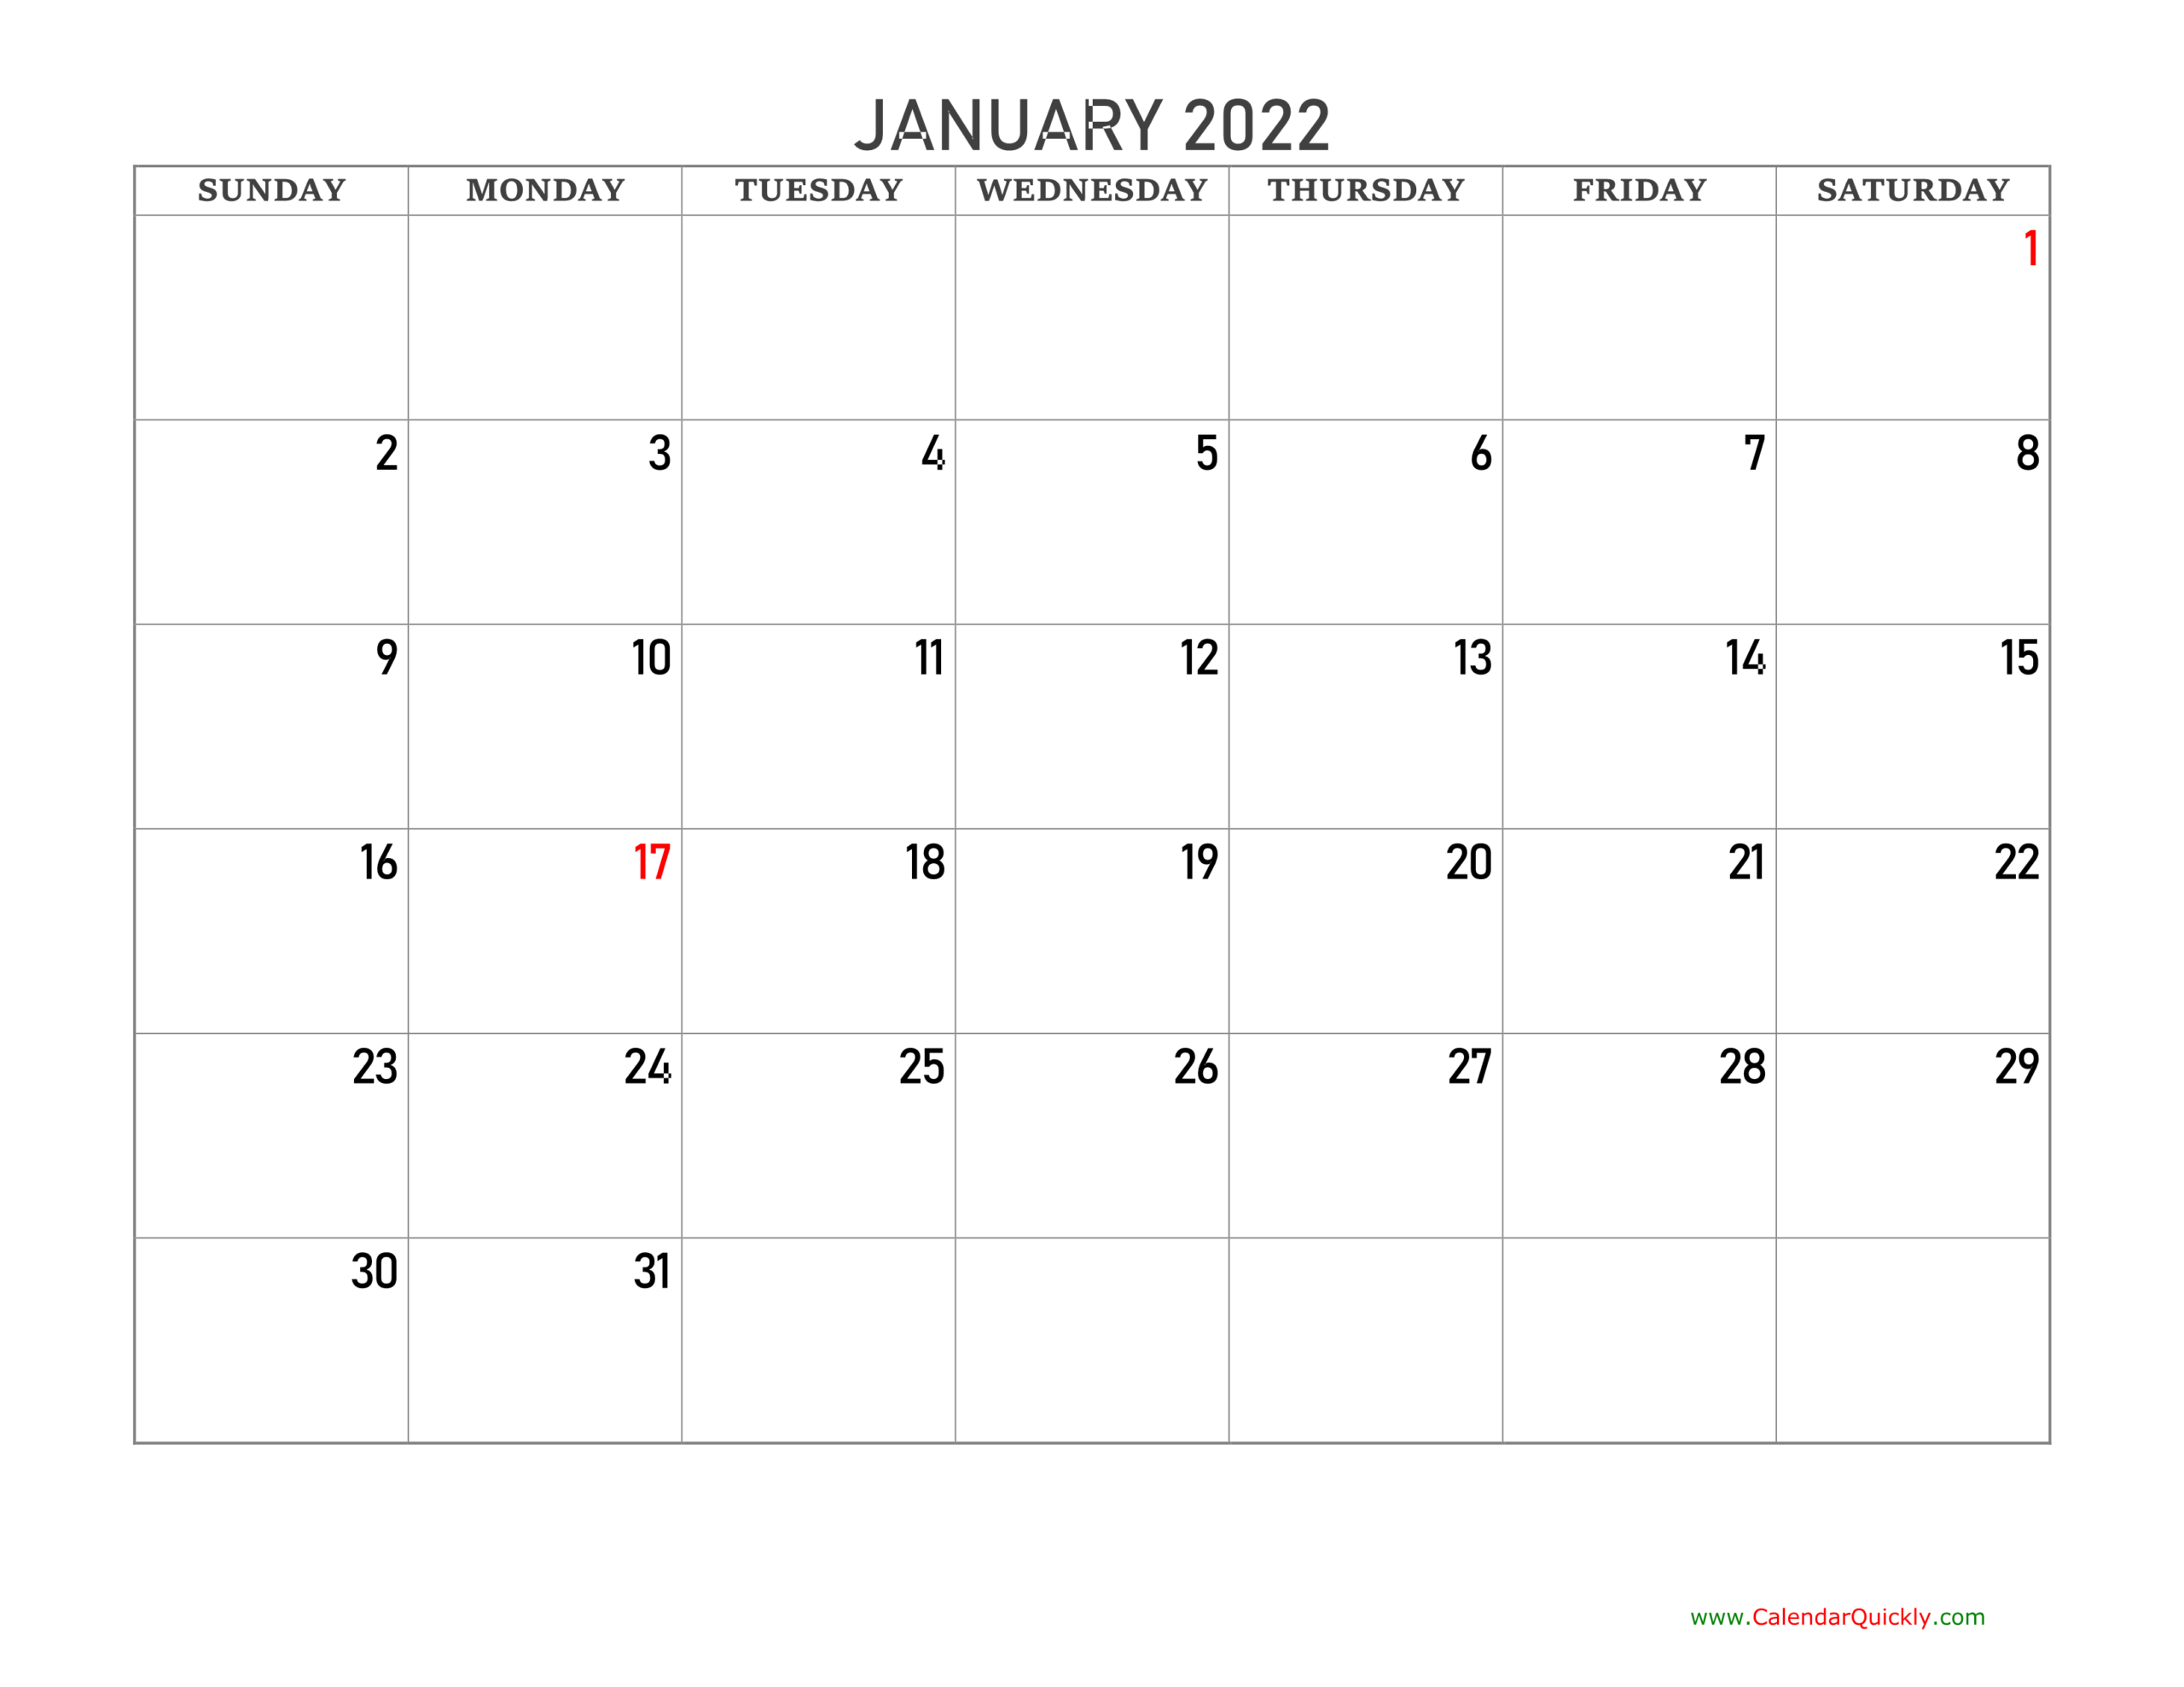 Get February 6 2022 Calendar